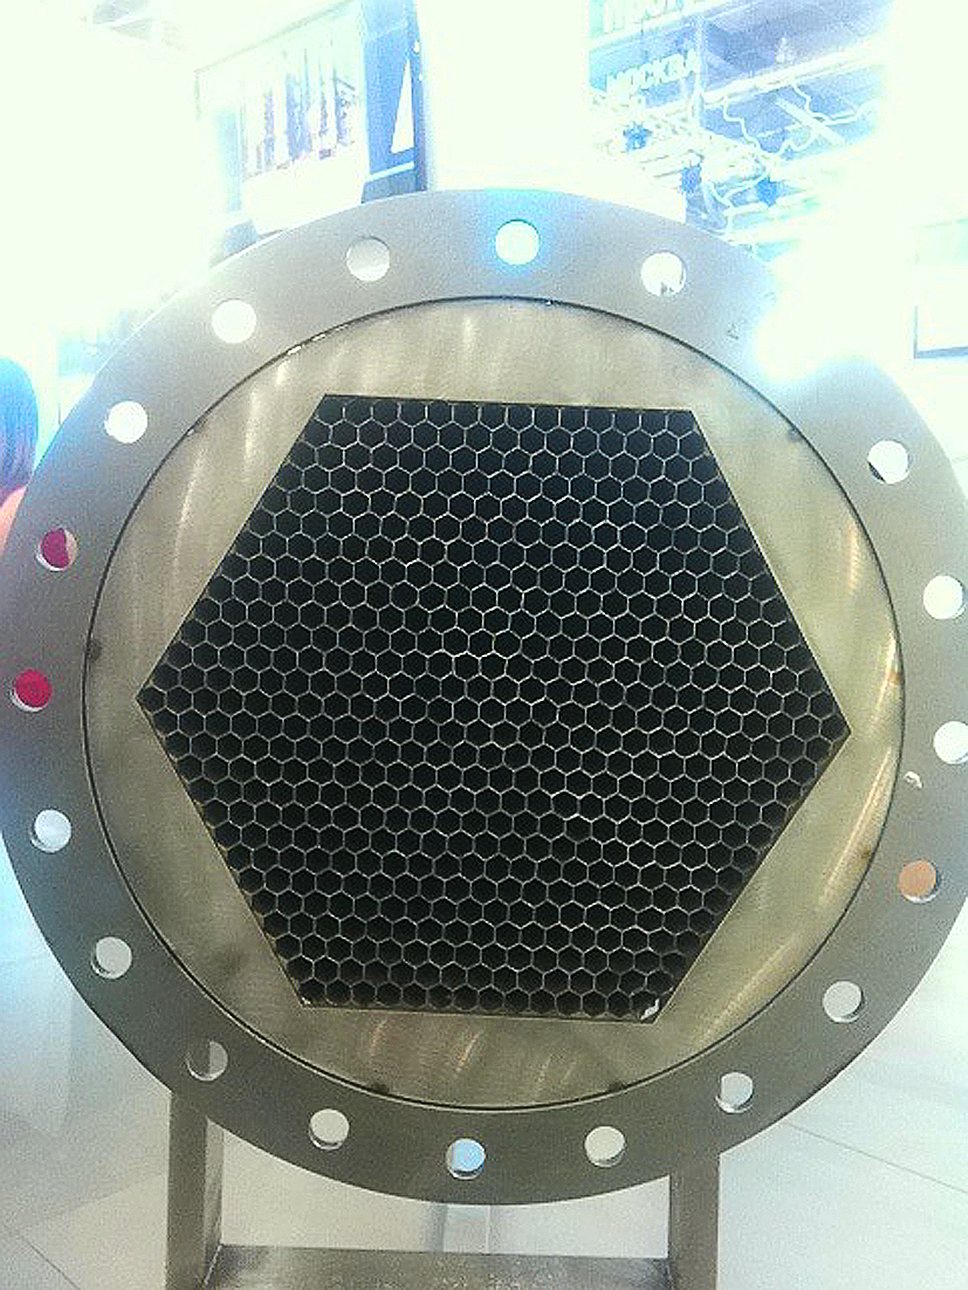 Оборудование по технологии Spin-Cell было представлено на выставке ИННОПРОМ-2012, г. Екатеринбург